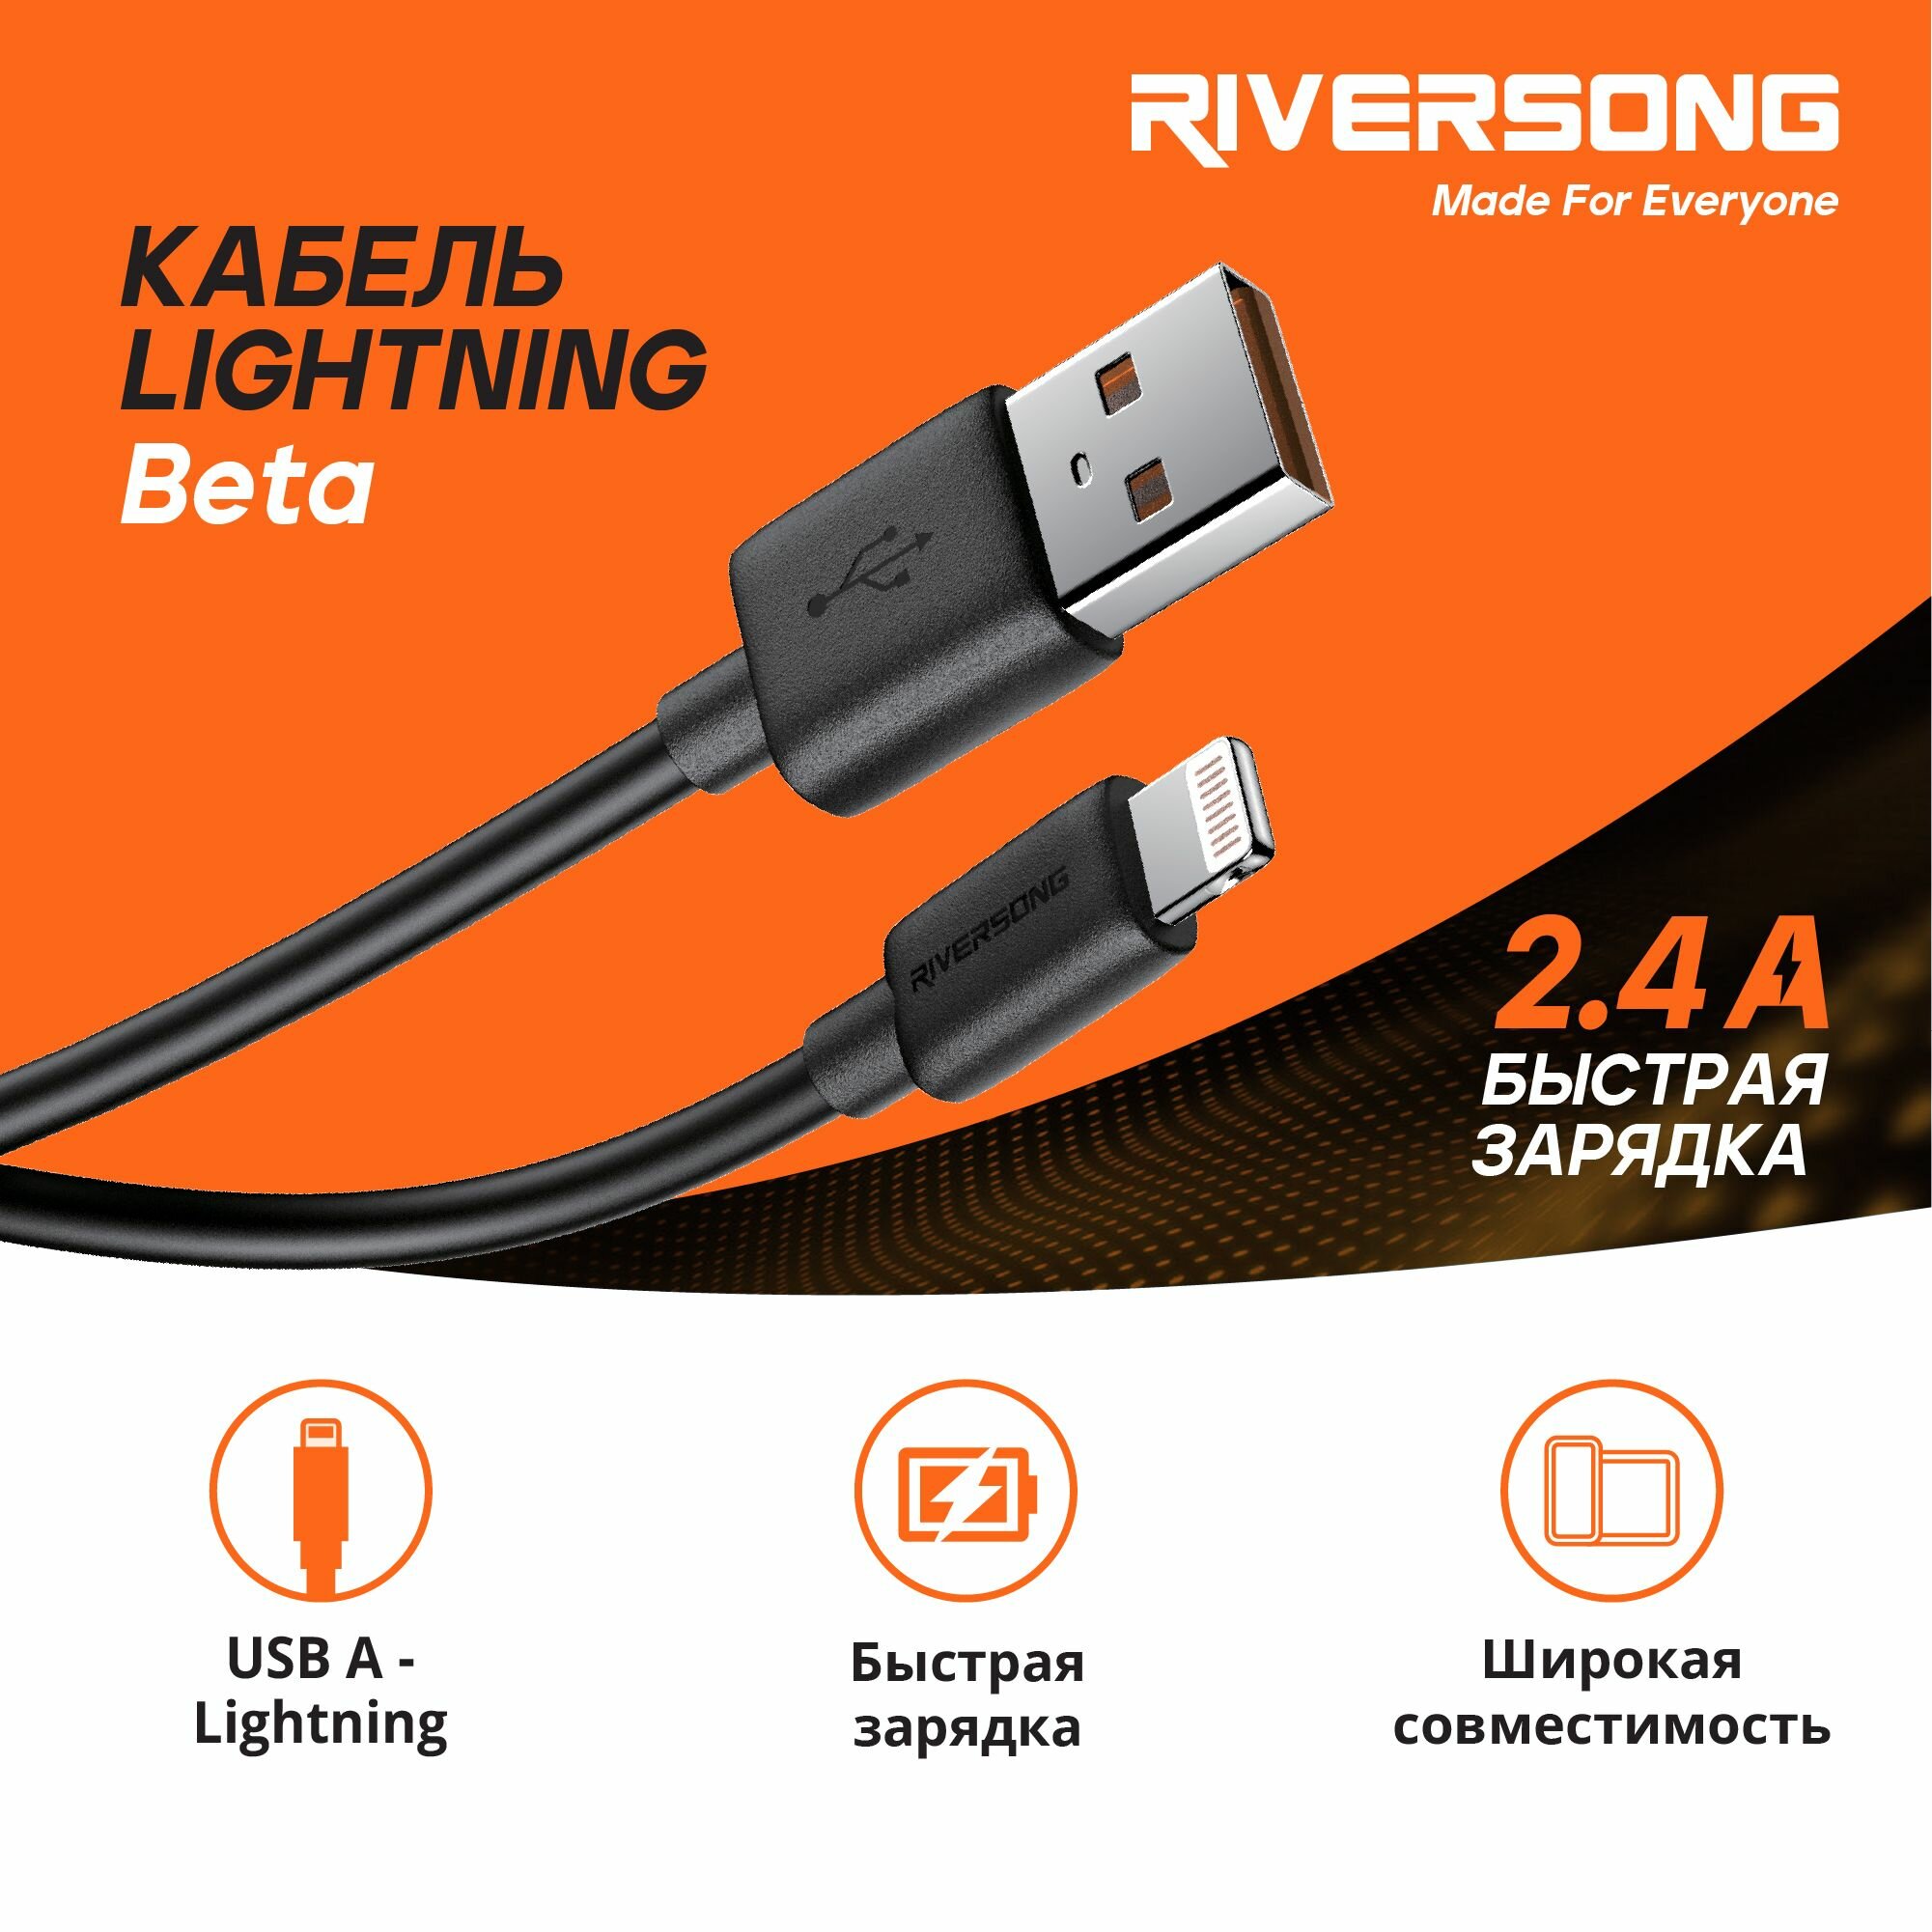 Кабель USB A - Lightning (1 метр) / для зарядки iPhone iPad AirPods / Кабель для Айфона / Провод для Айфона / Riversong Beta 2.4А USB 2.0 цвет черный